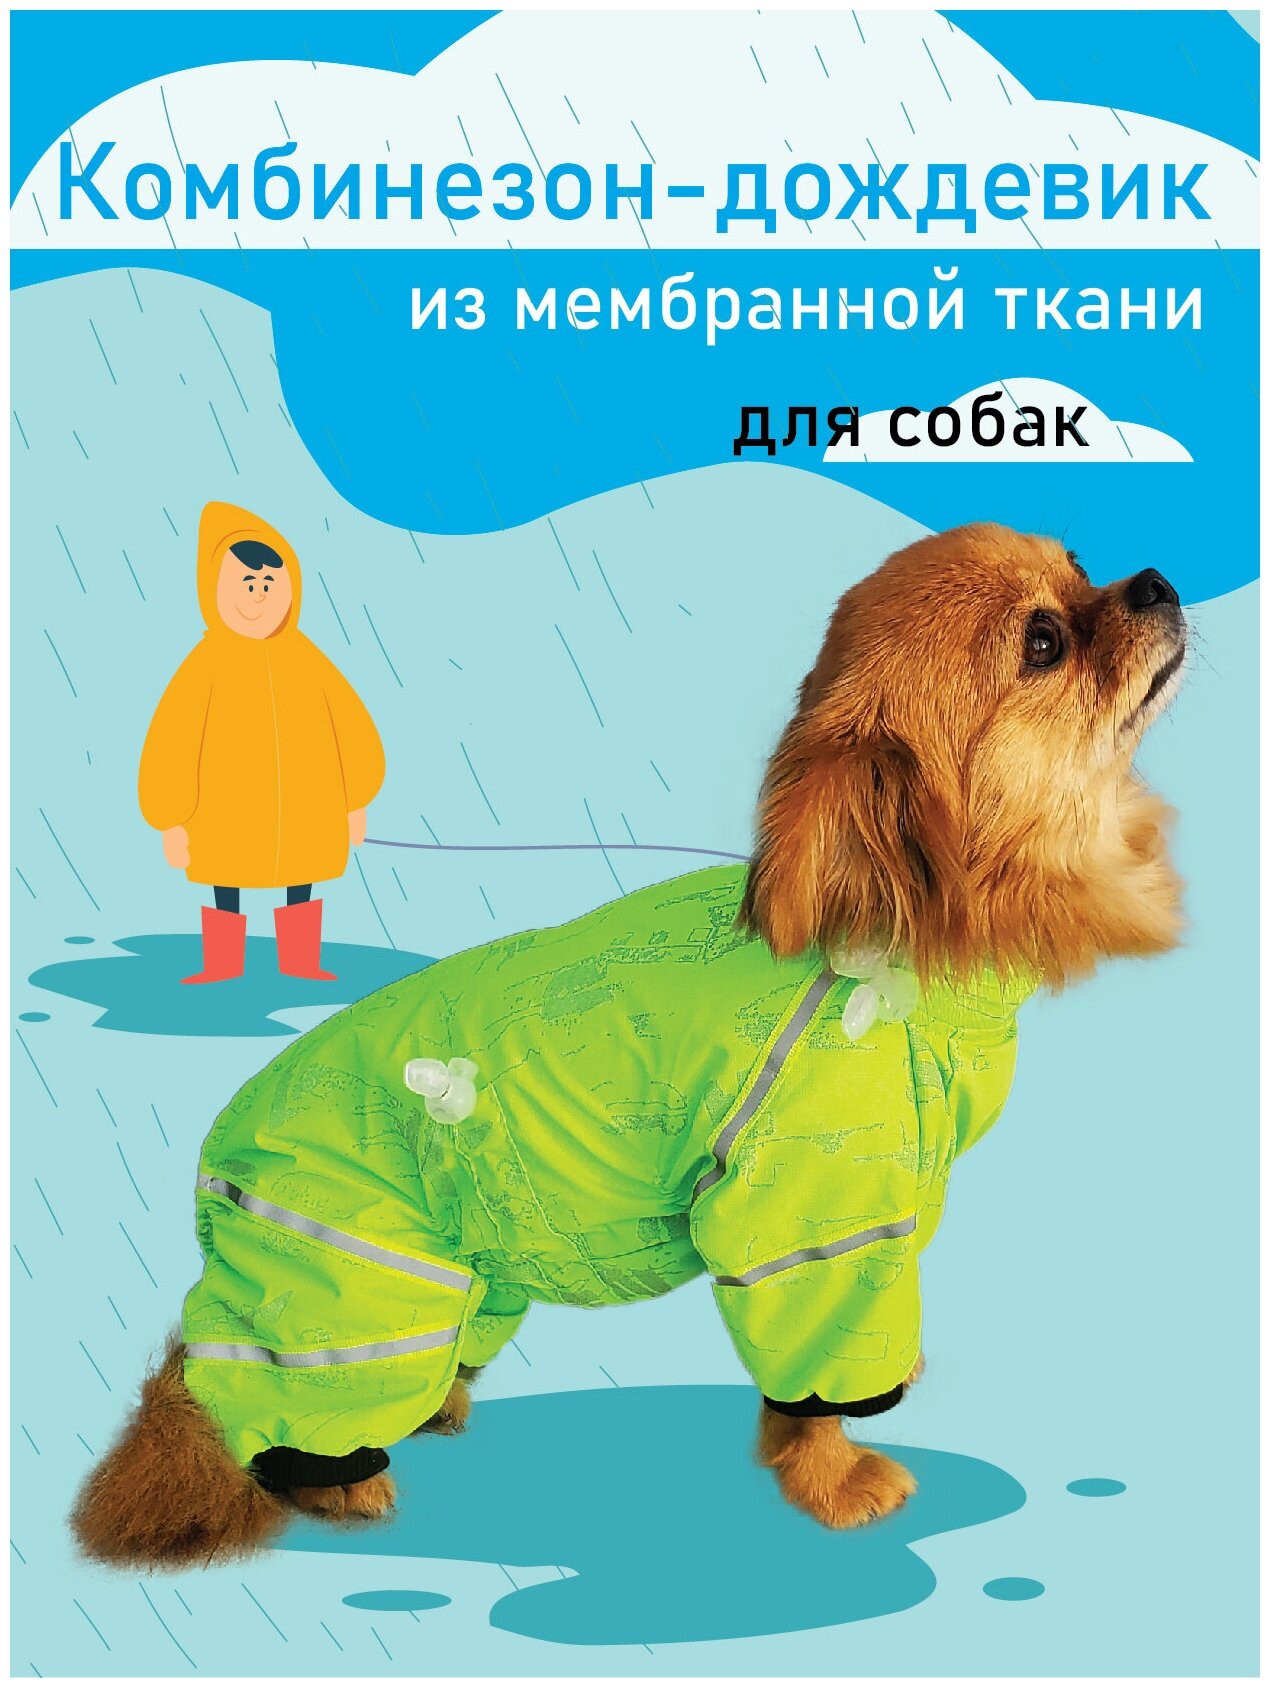 Одежда для собак, комбинезон дождевик для собак мелких и средних пород, светло-зеленый, размер 24\2, шея 24 см спина 24см грудь 34-38см